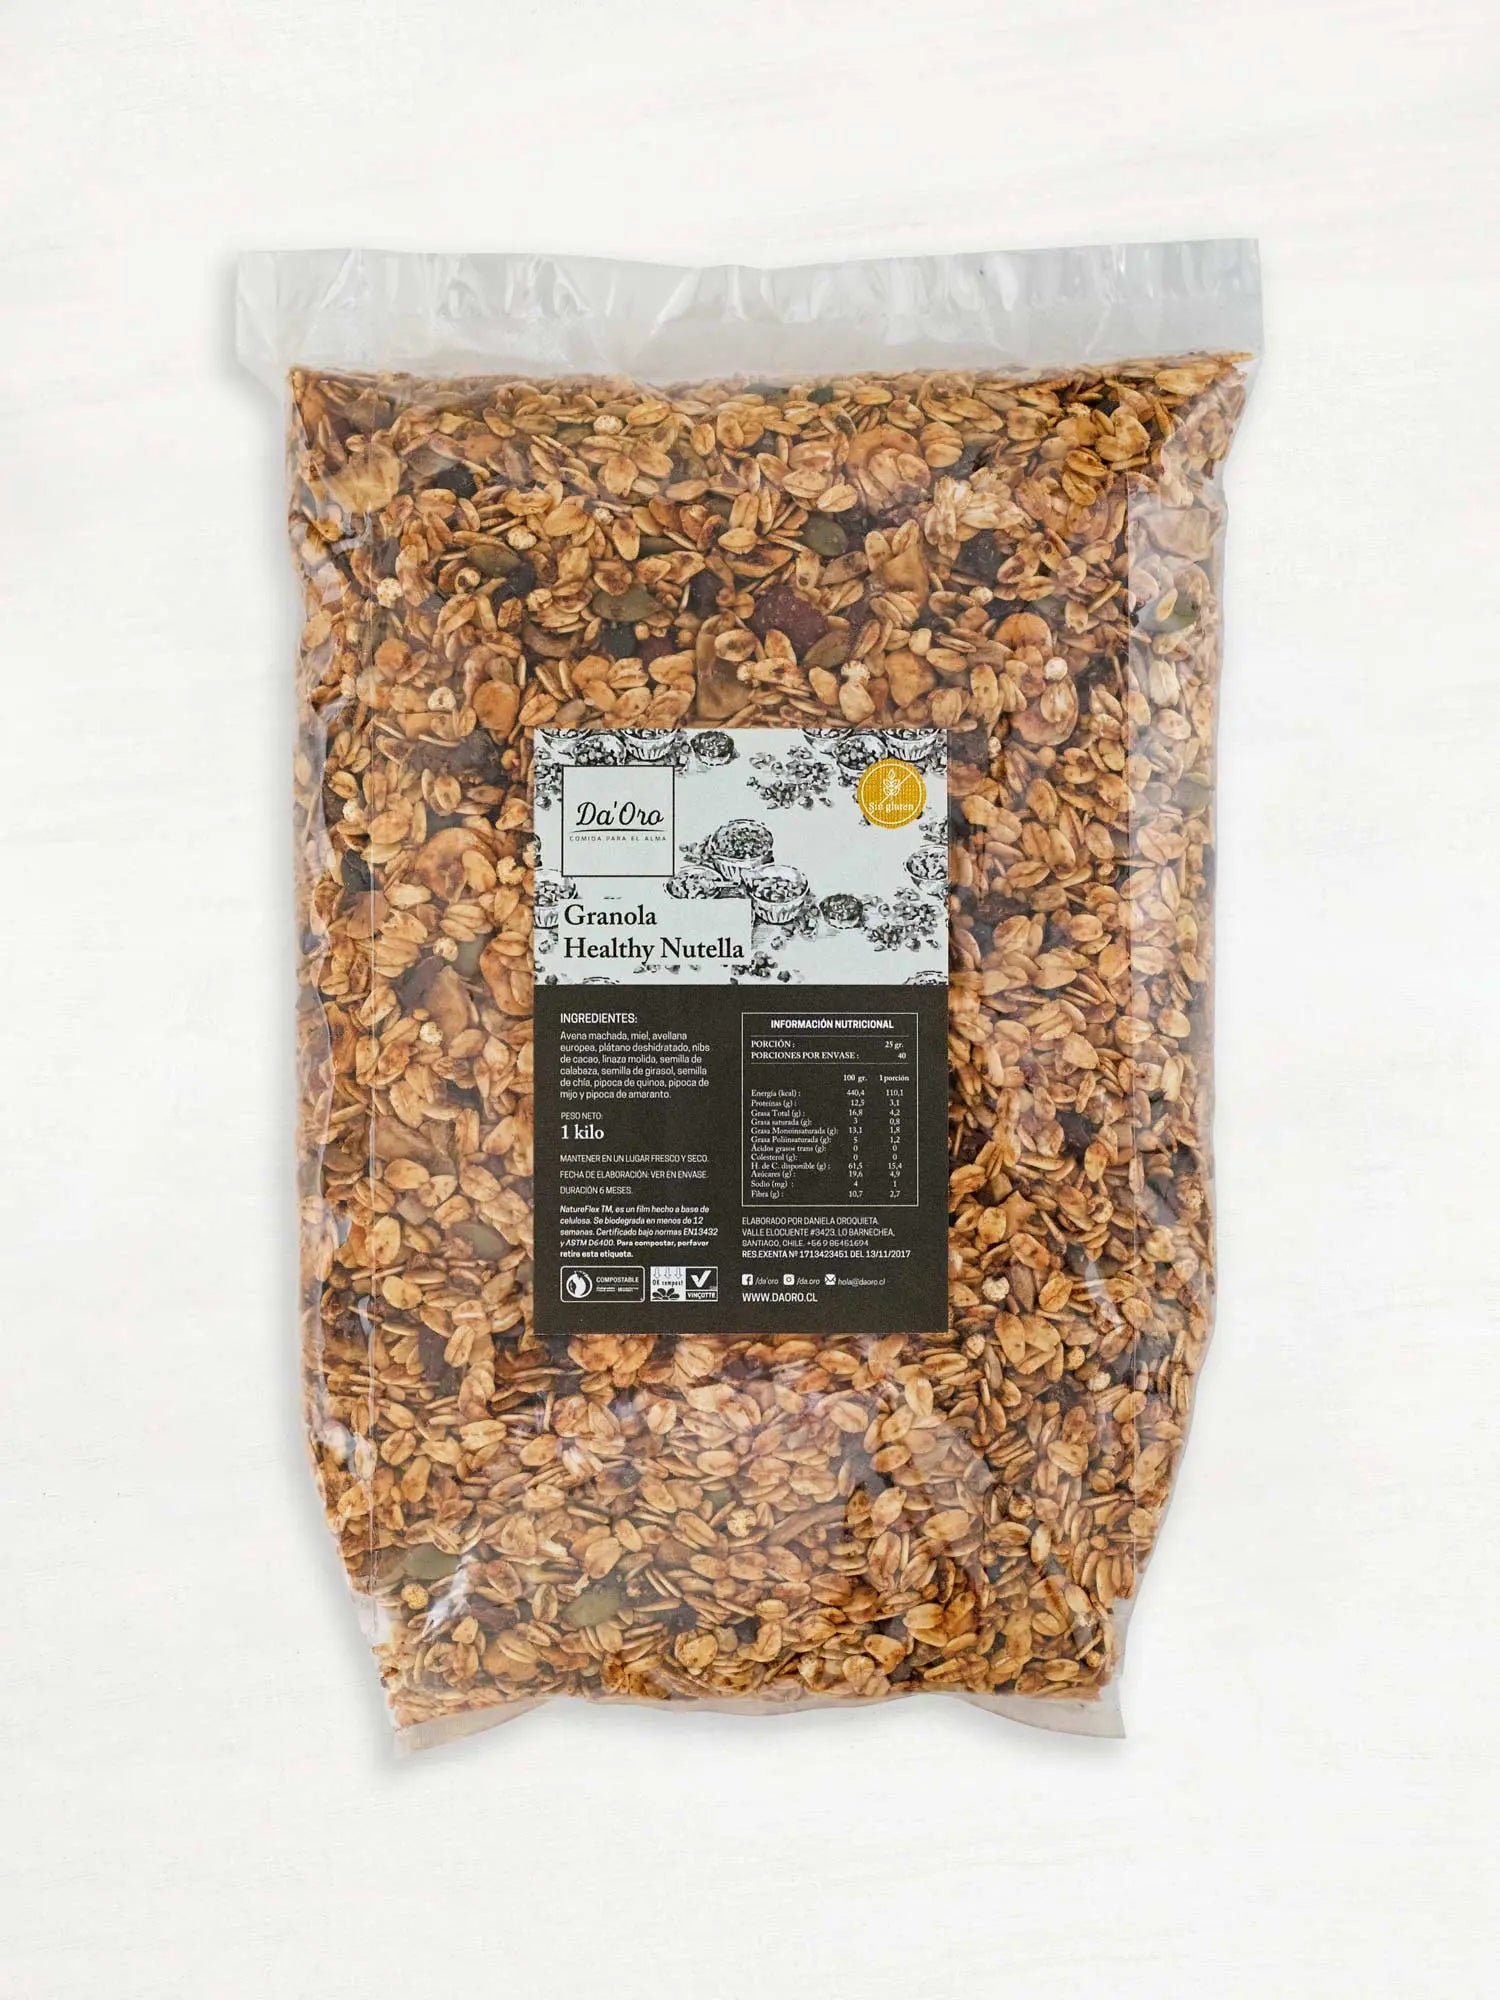 Bolsa de granola sin gluten healthy nutella 475g marca Da’Oro